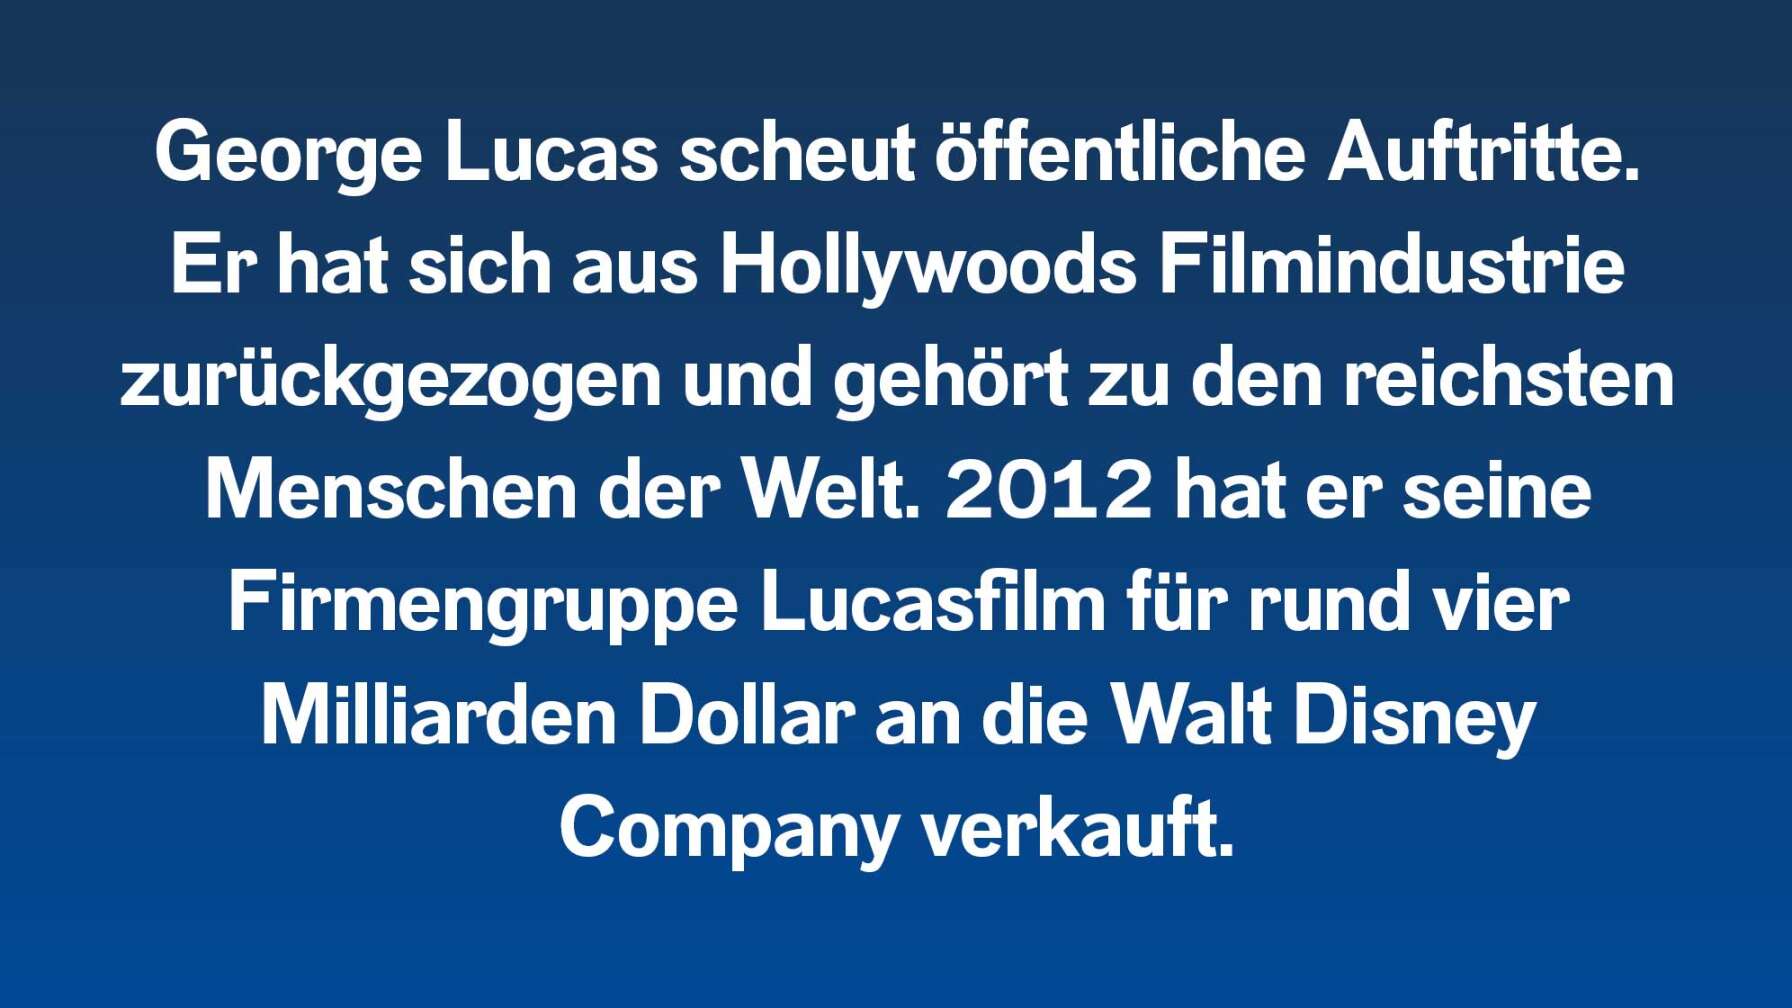 Ein stiller Typ: George Lucas scheut öffentliche Auftritte und hält ungern Reden. Er hat sich aus Hollywoods Filmindustrie zurückgezogen und finanziert seine Filme mit der eigenen Filmproduktionsgesellschaft größtenteils selbst. Er gehört zu den reichsten Menschen der Welt und hat 2012 seine Firmengruppe Lucasfilm für rund vier Milliarden Dollar an die Walt Disney Company verkauft.